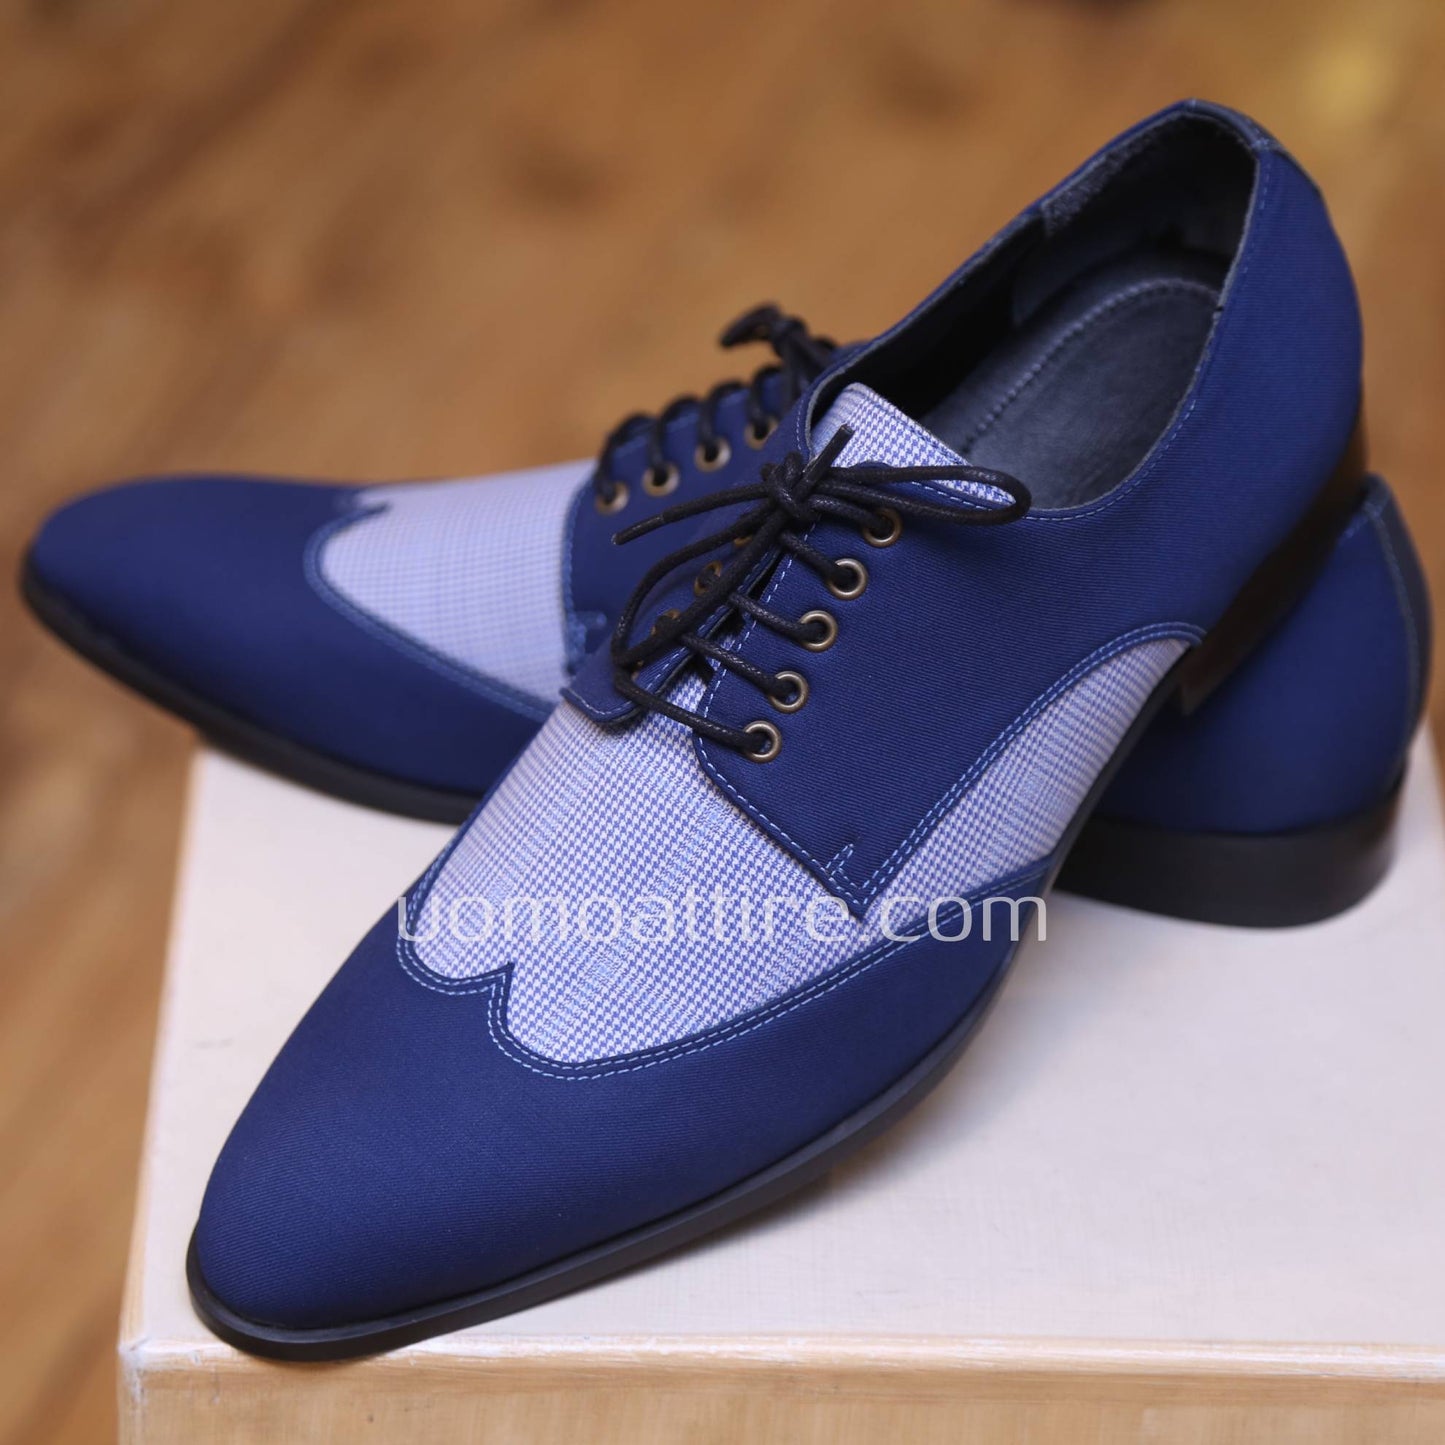 
                  
                    fabric shoes for royal blue 3 piece suit for men
                  
                